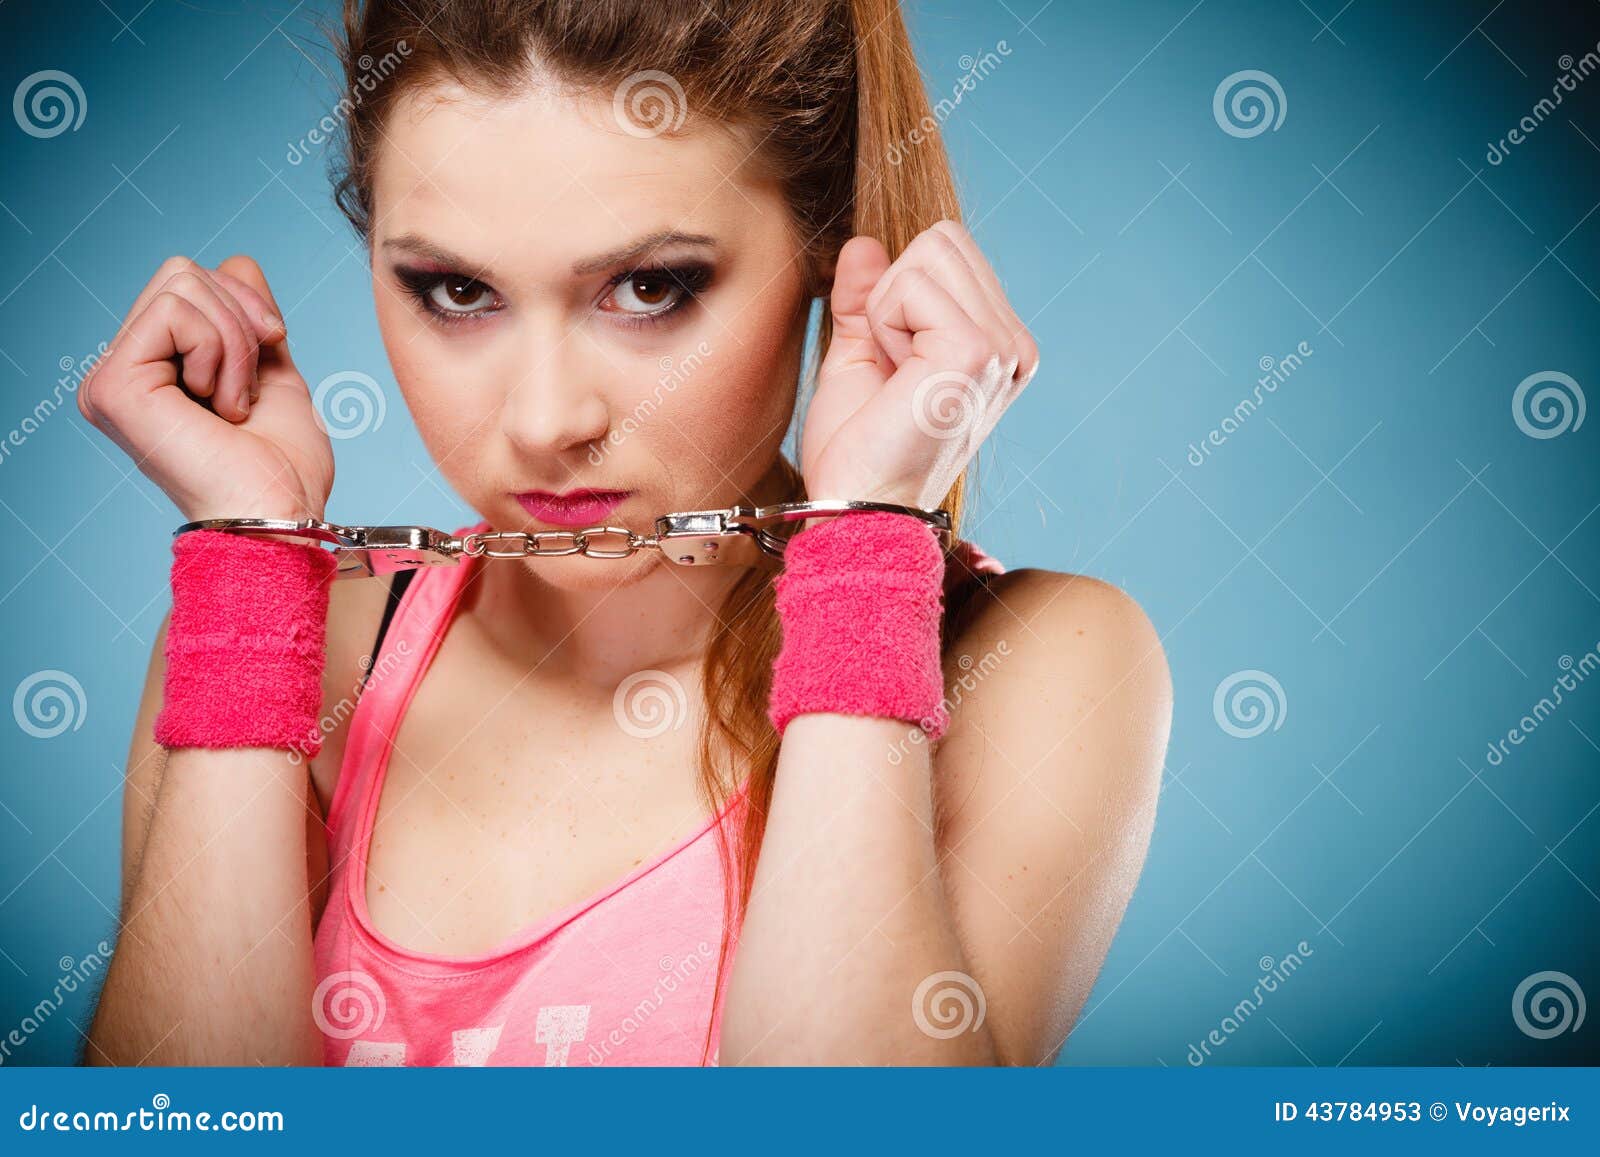 Surprised teen girl jail